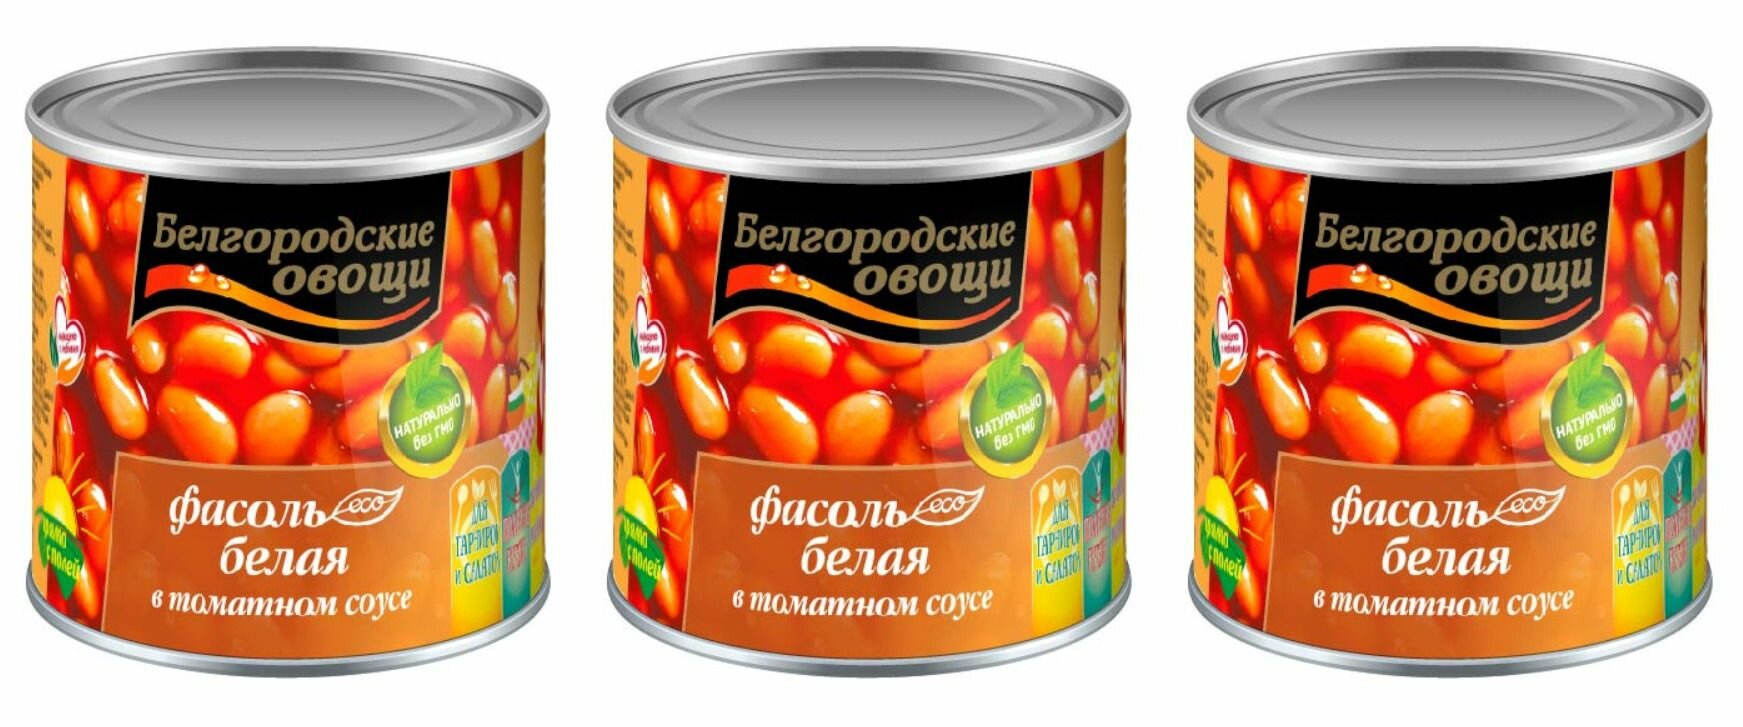 Белгородские овощи Фасоль белая в томате, 400 г, 3 шт